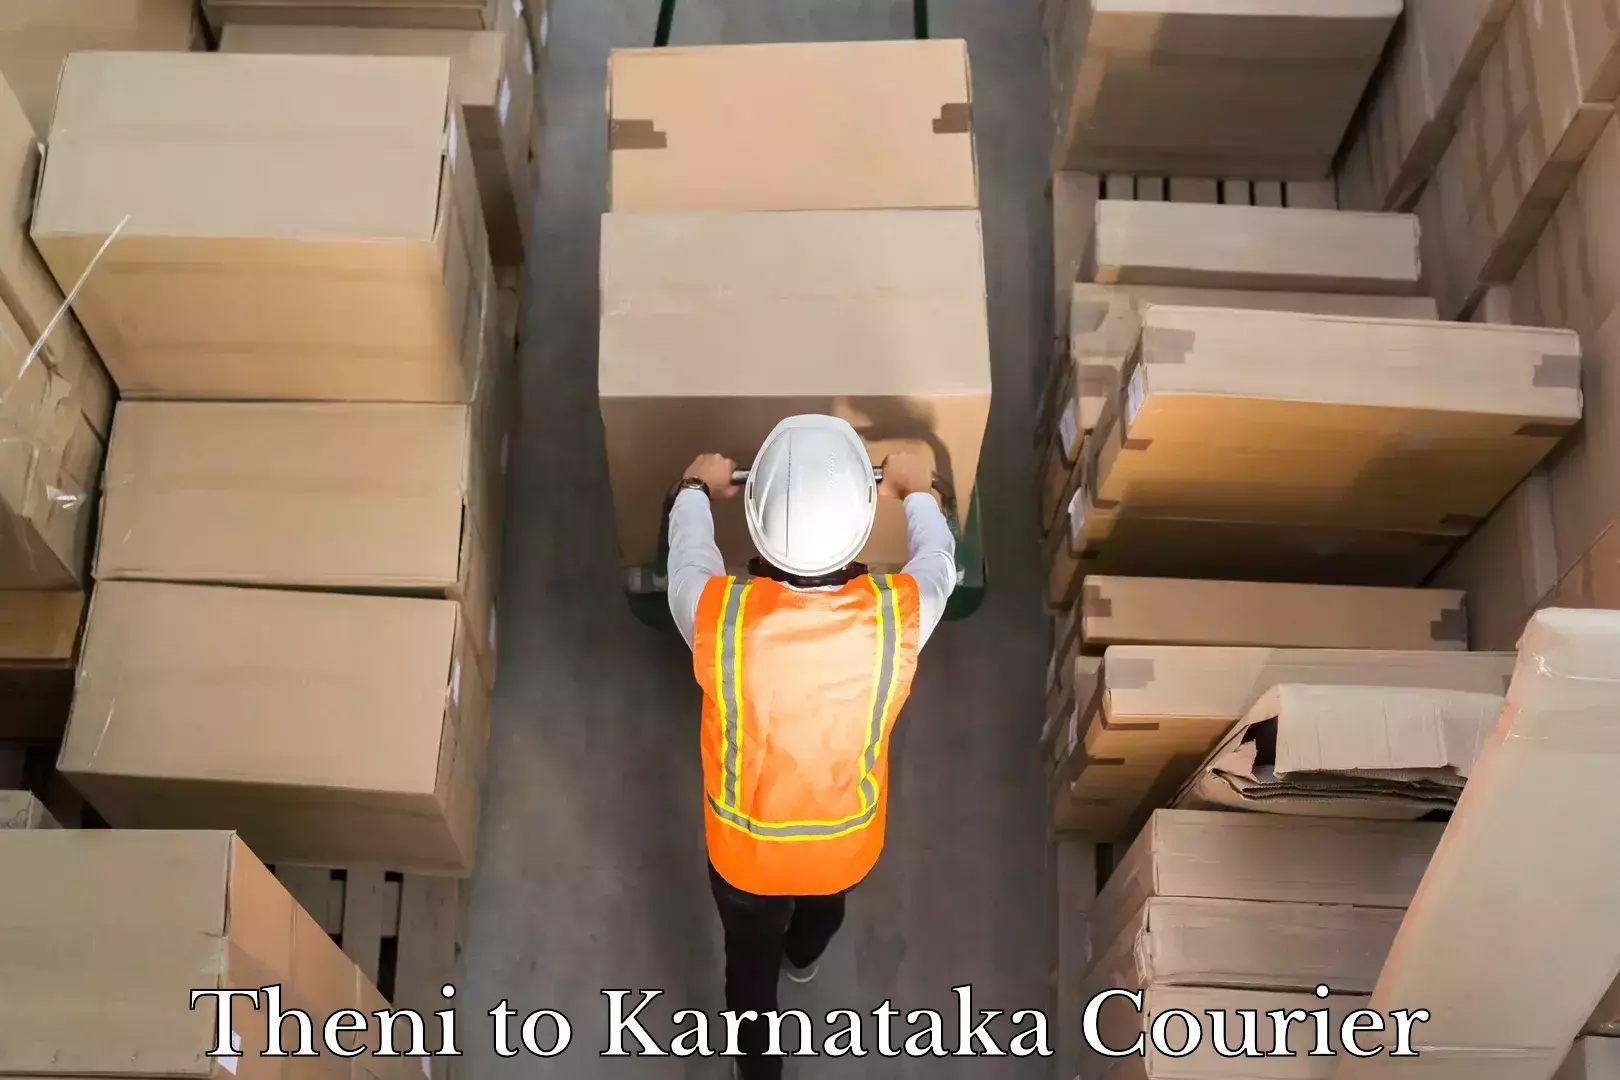 Global shipping solutions Theni to Karnataka